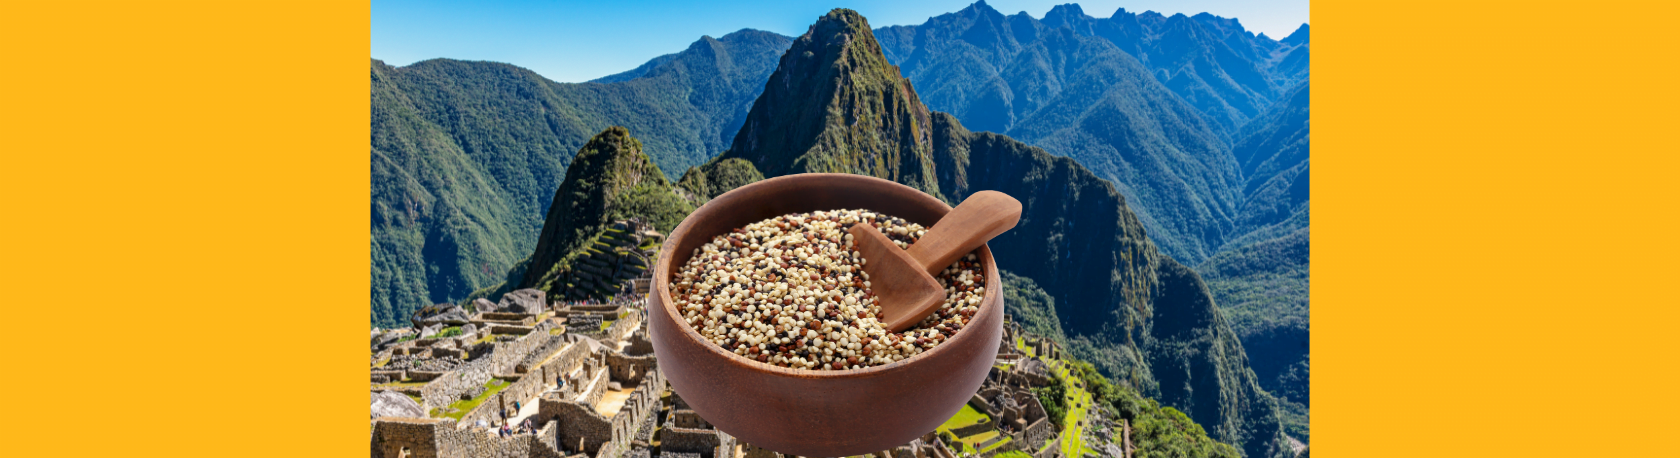 ¿Sabías que la quinua se conoce también como el ‘grano madre’ de los incas?